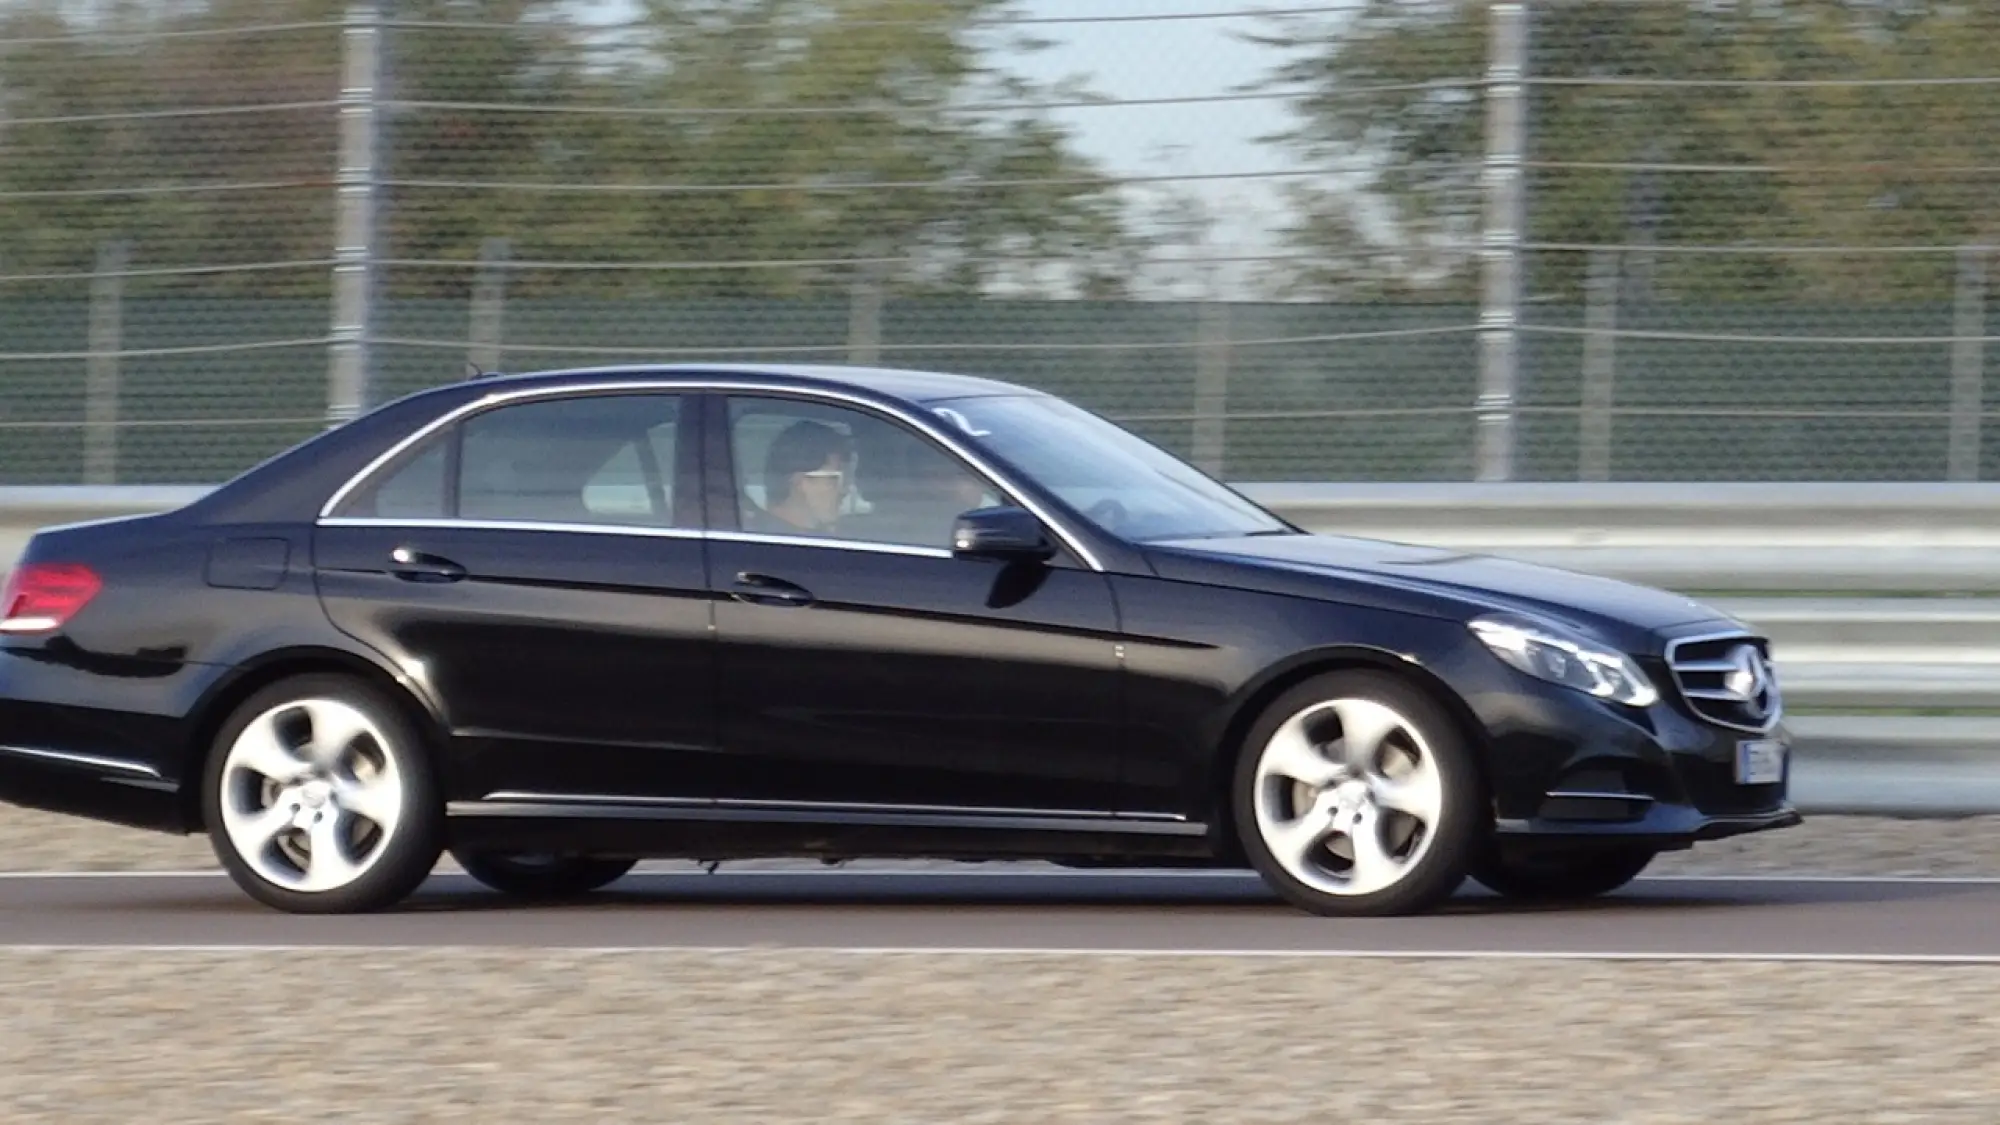 Mercedes Classe E BlueTEC Hybrid - Primo contatto - 47